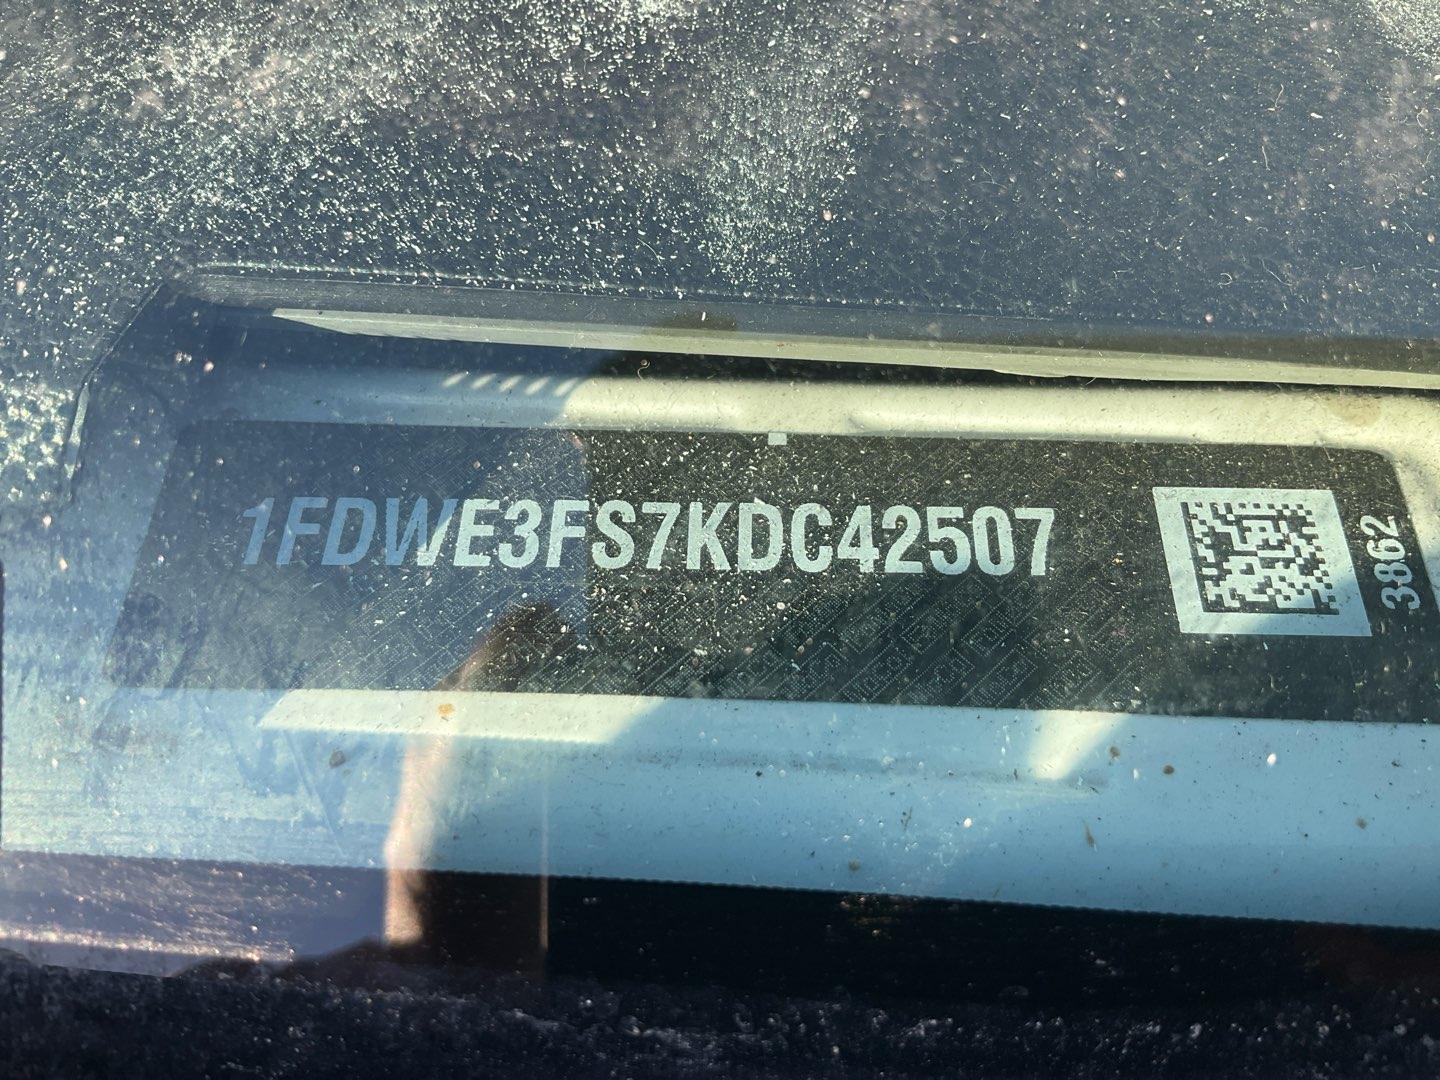 2019 FORD COMMERCIAL VANS E3 Serial Number: 1FDWE3FS7KDC42507